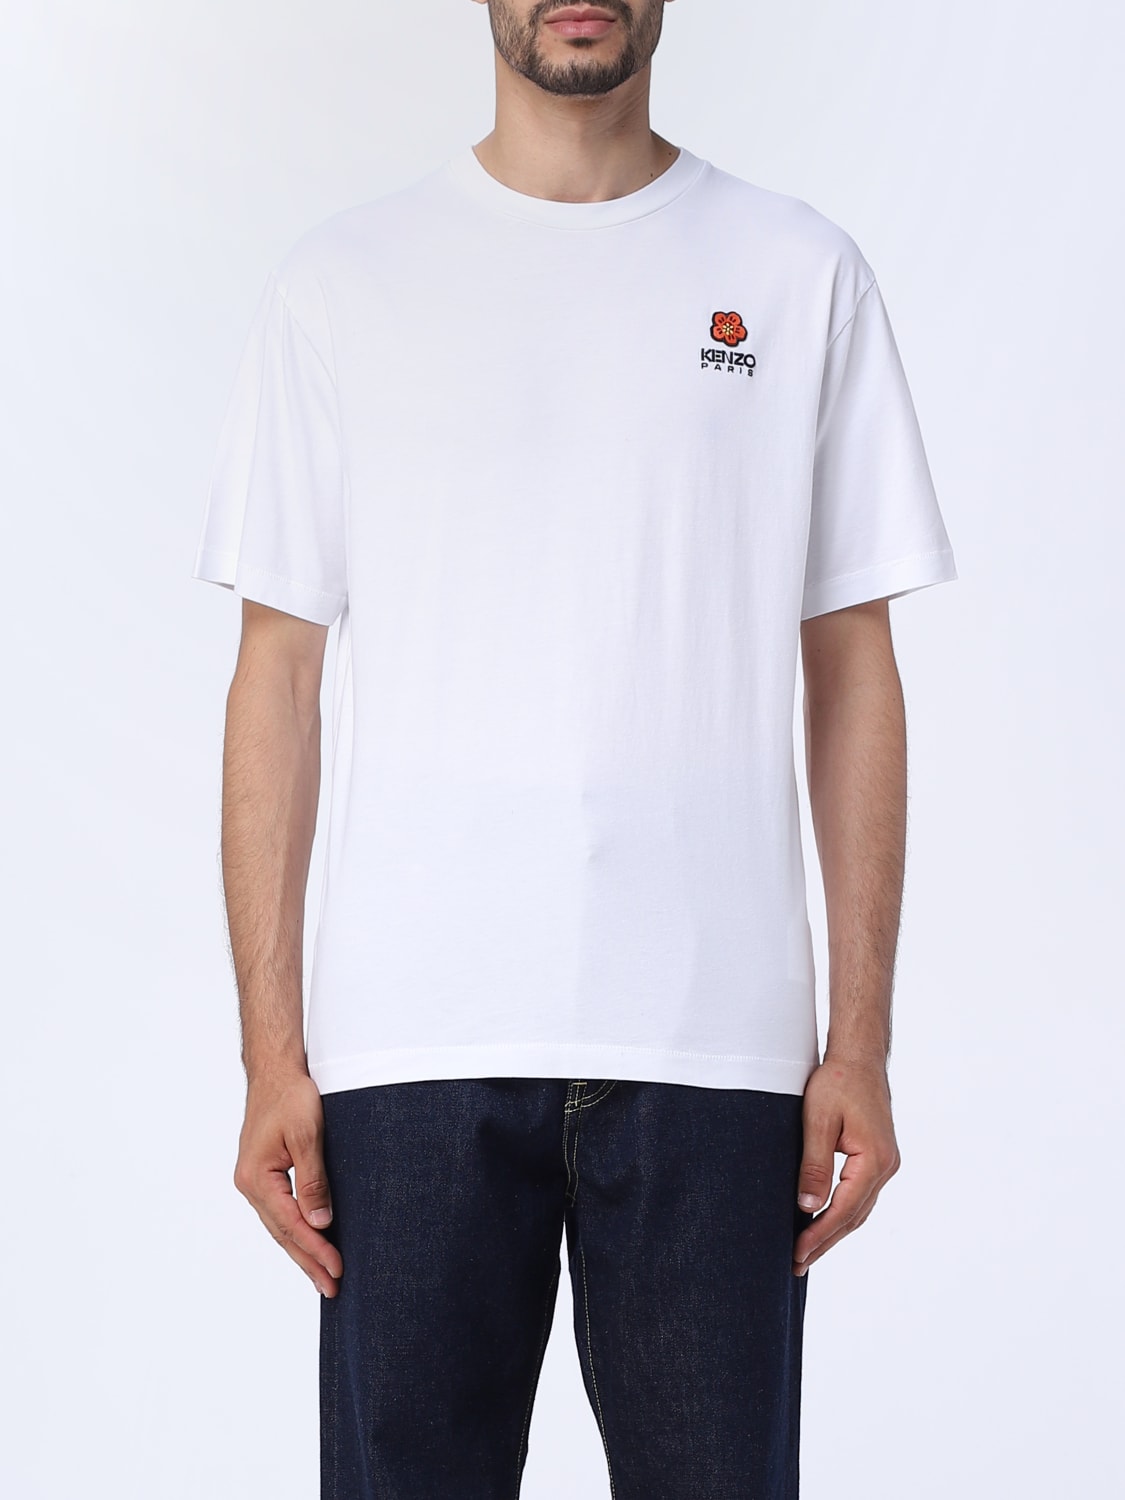 KENZO: Flower cotton t-shirt - White | KENZO t-shirt FC65TS4124SG ...